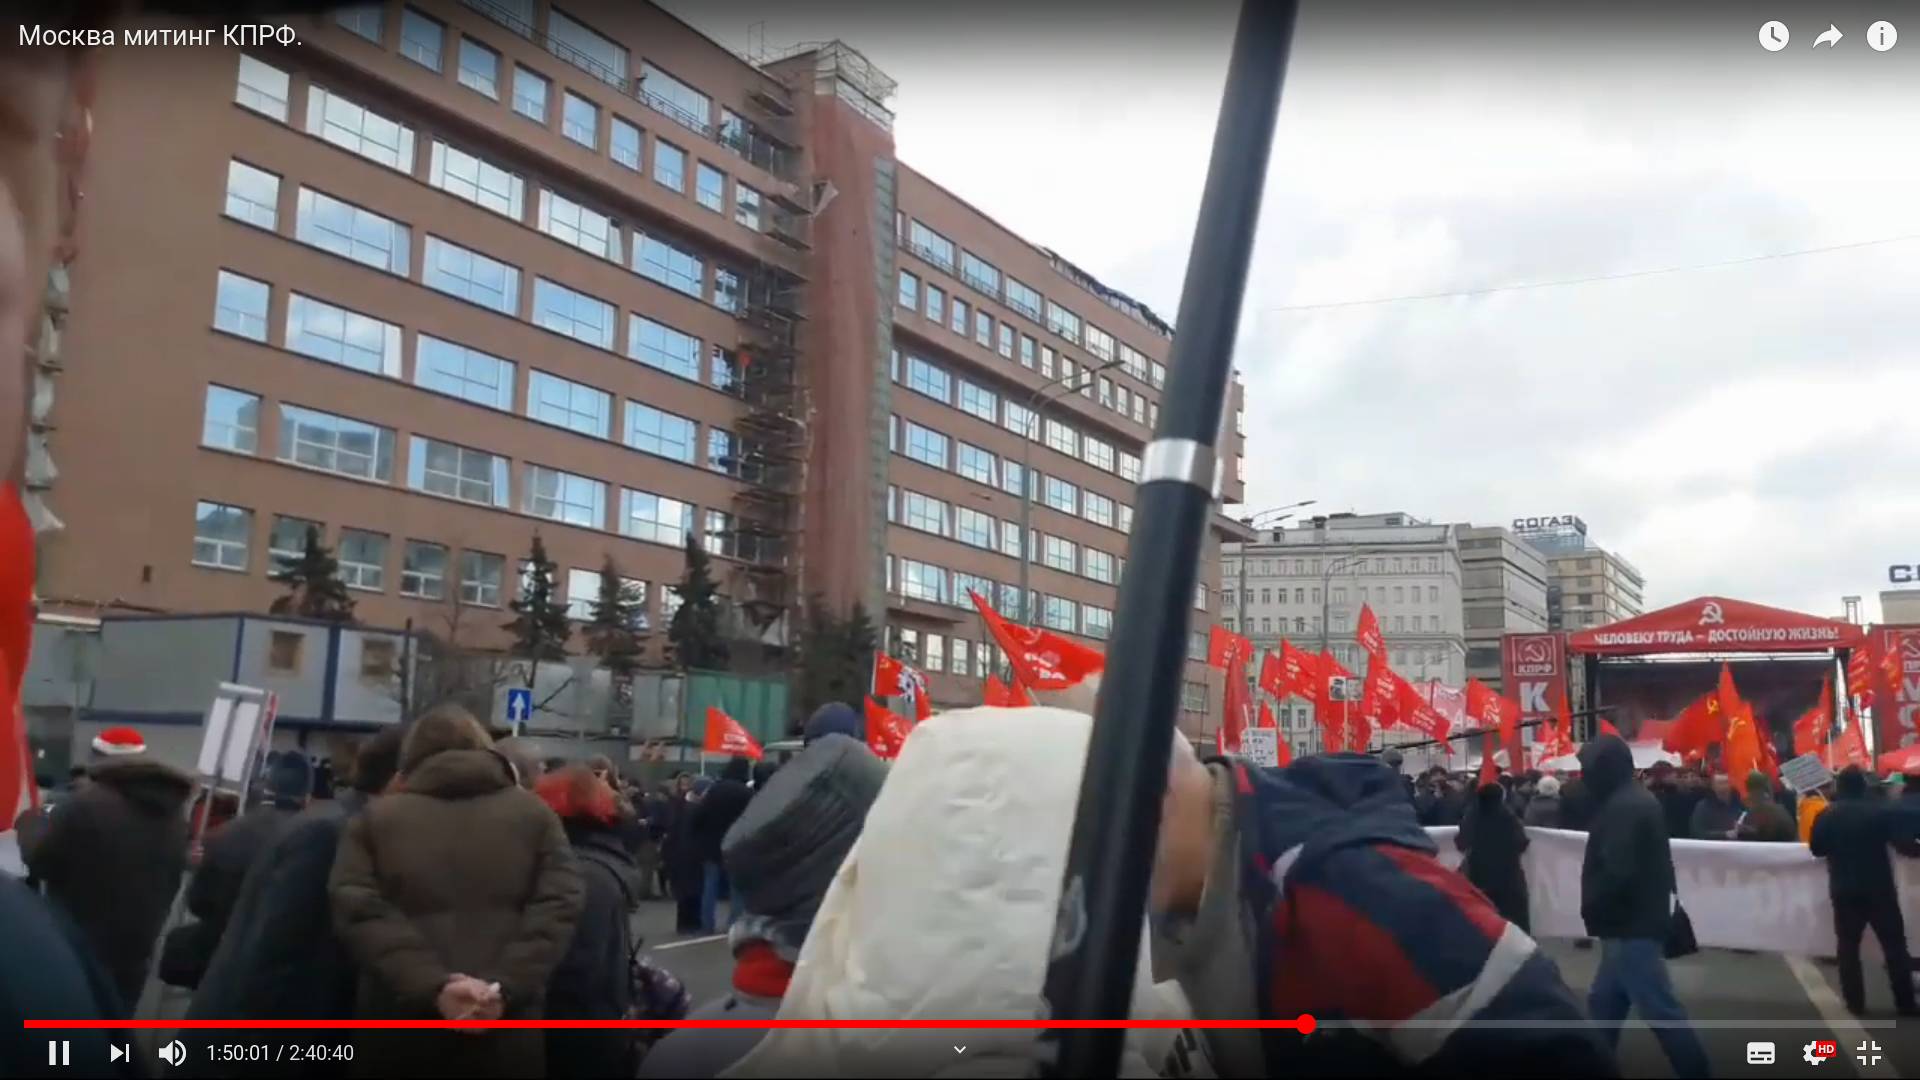 Цитата из видео «Москва митинг КПРФ» пользователя Дмитрий Кургузов.